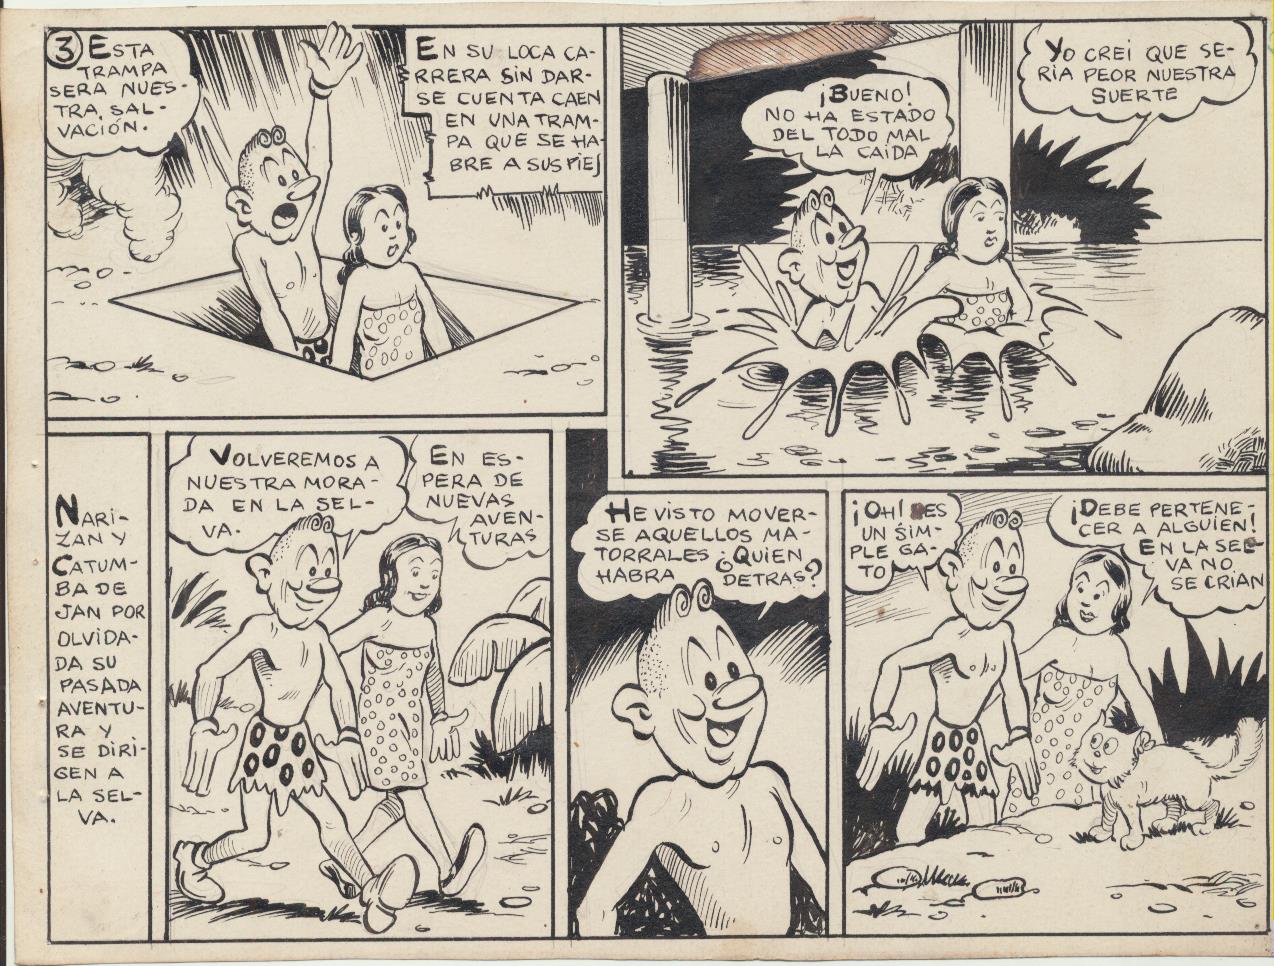 Narizán. Dibujos Originales de Ayné en 1946. Tebeo completo. 9 hojas originales + colores en dorso de portada